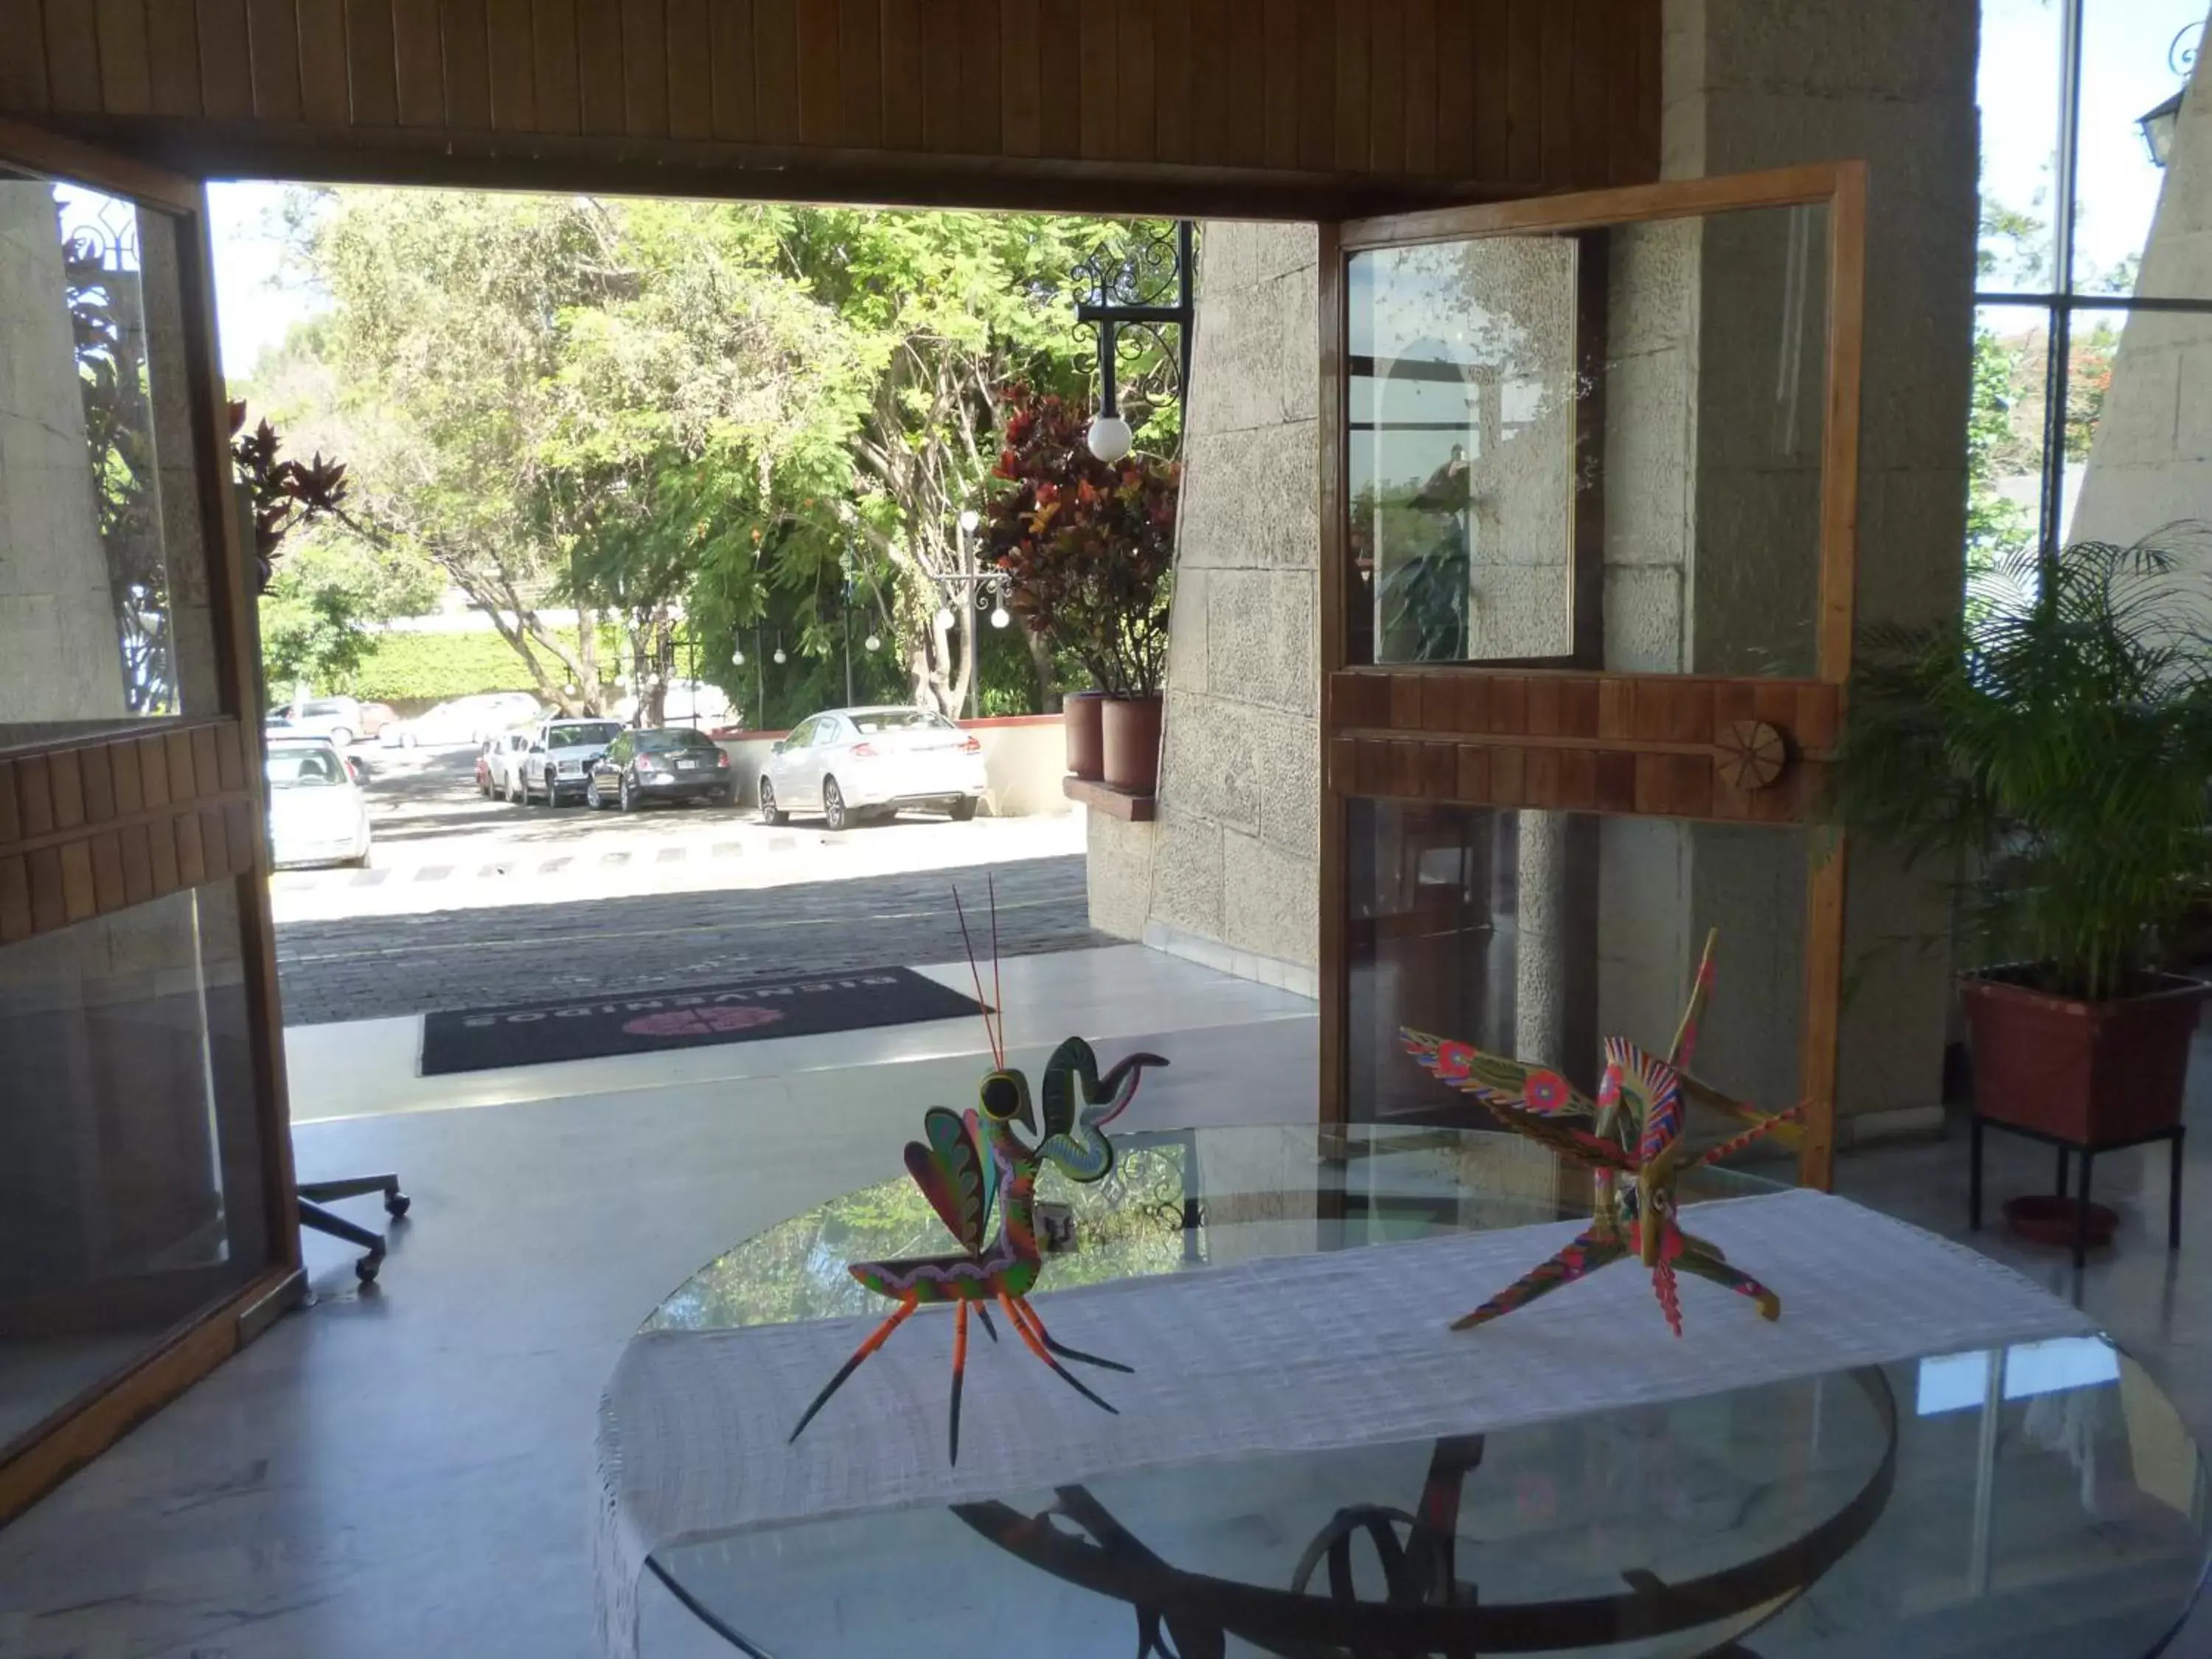 Lobby or reception in Mision De Los Angeles